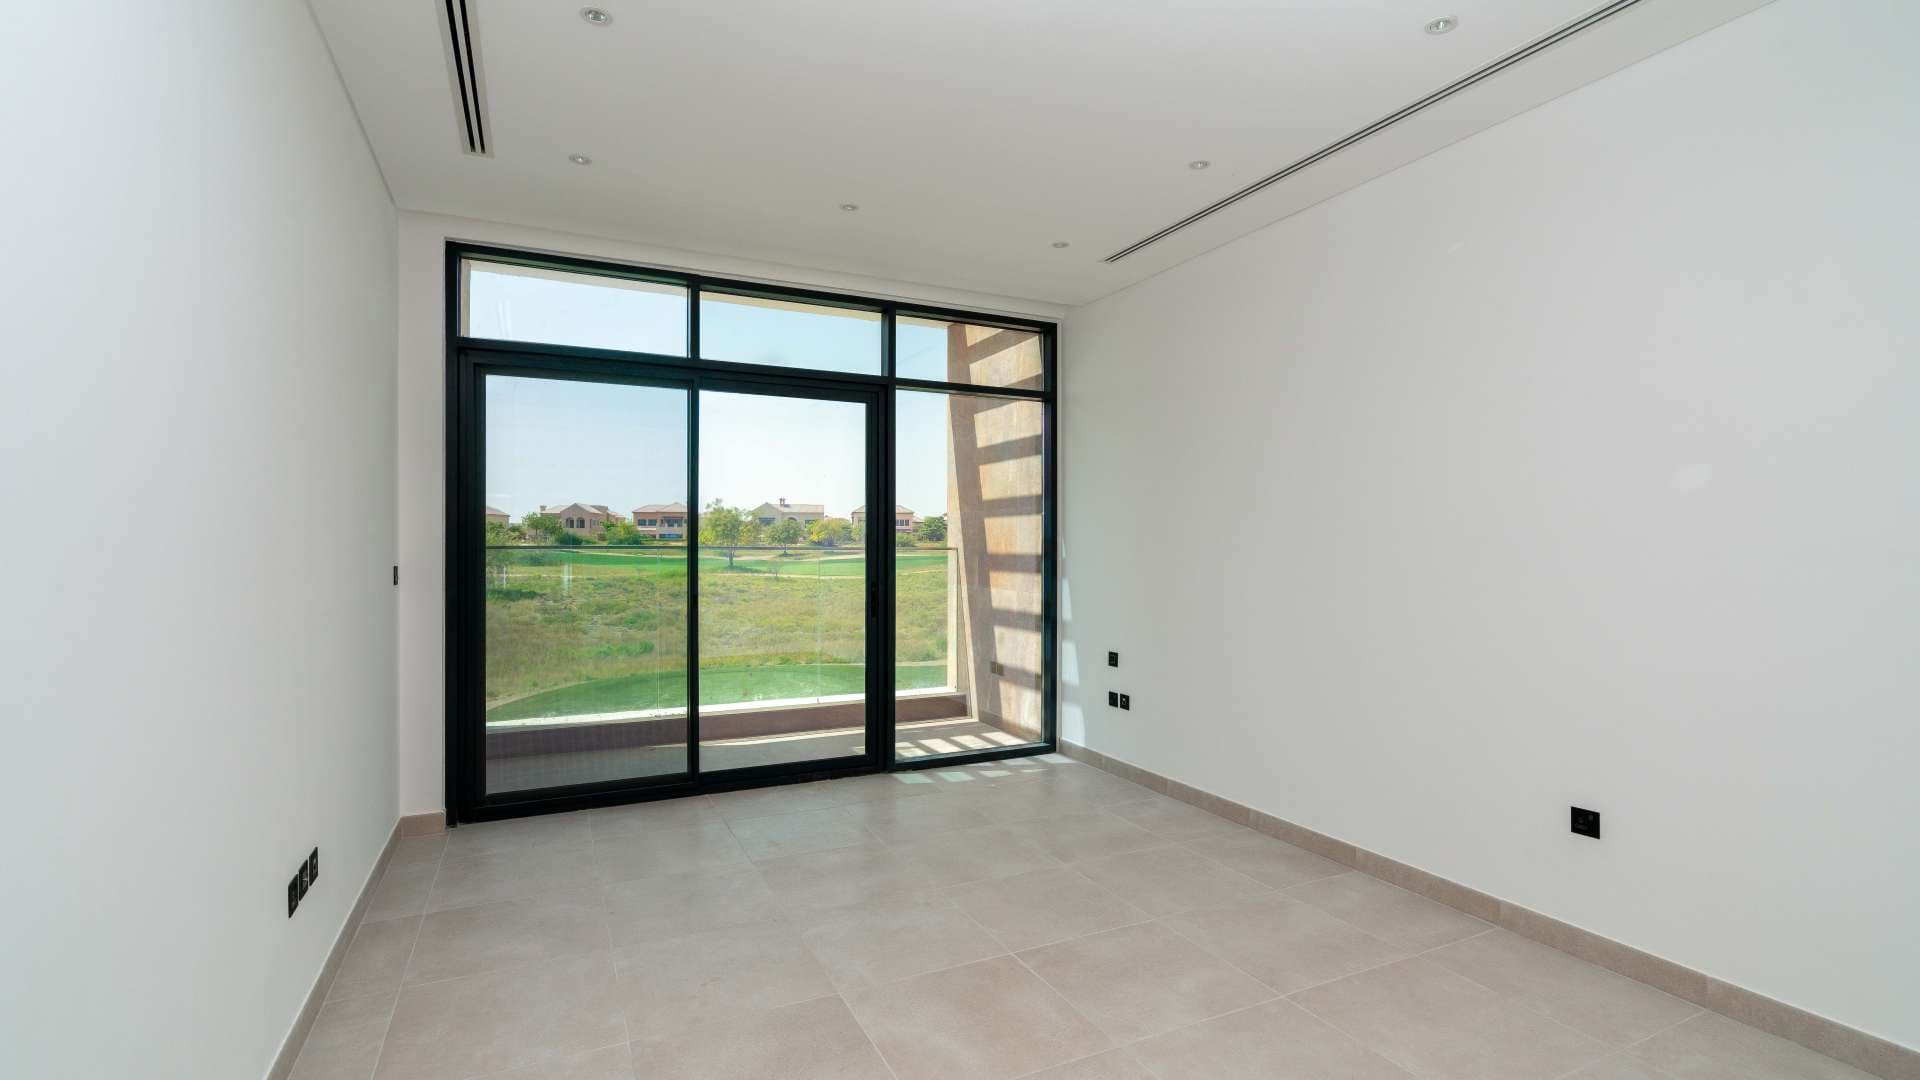 4 Bedroom Villa For Rent Jumeirah Luxury Lp07288 1981816366797500.jpg